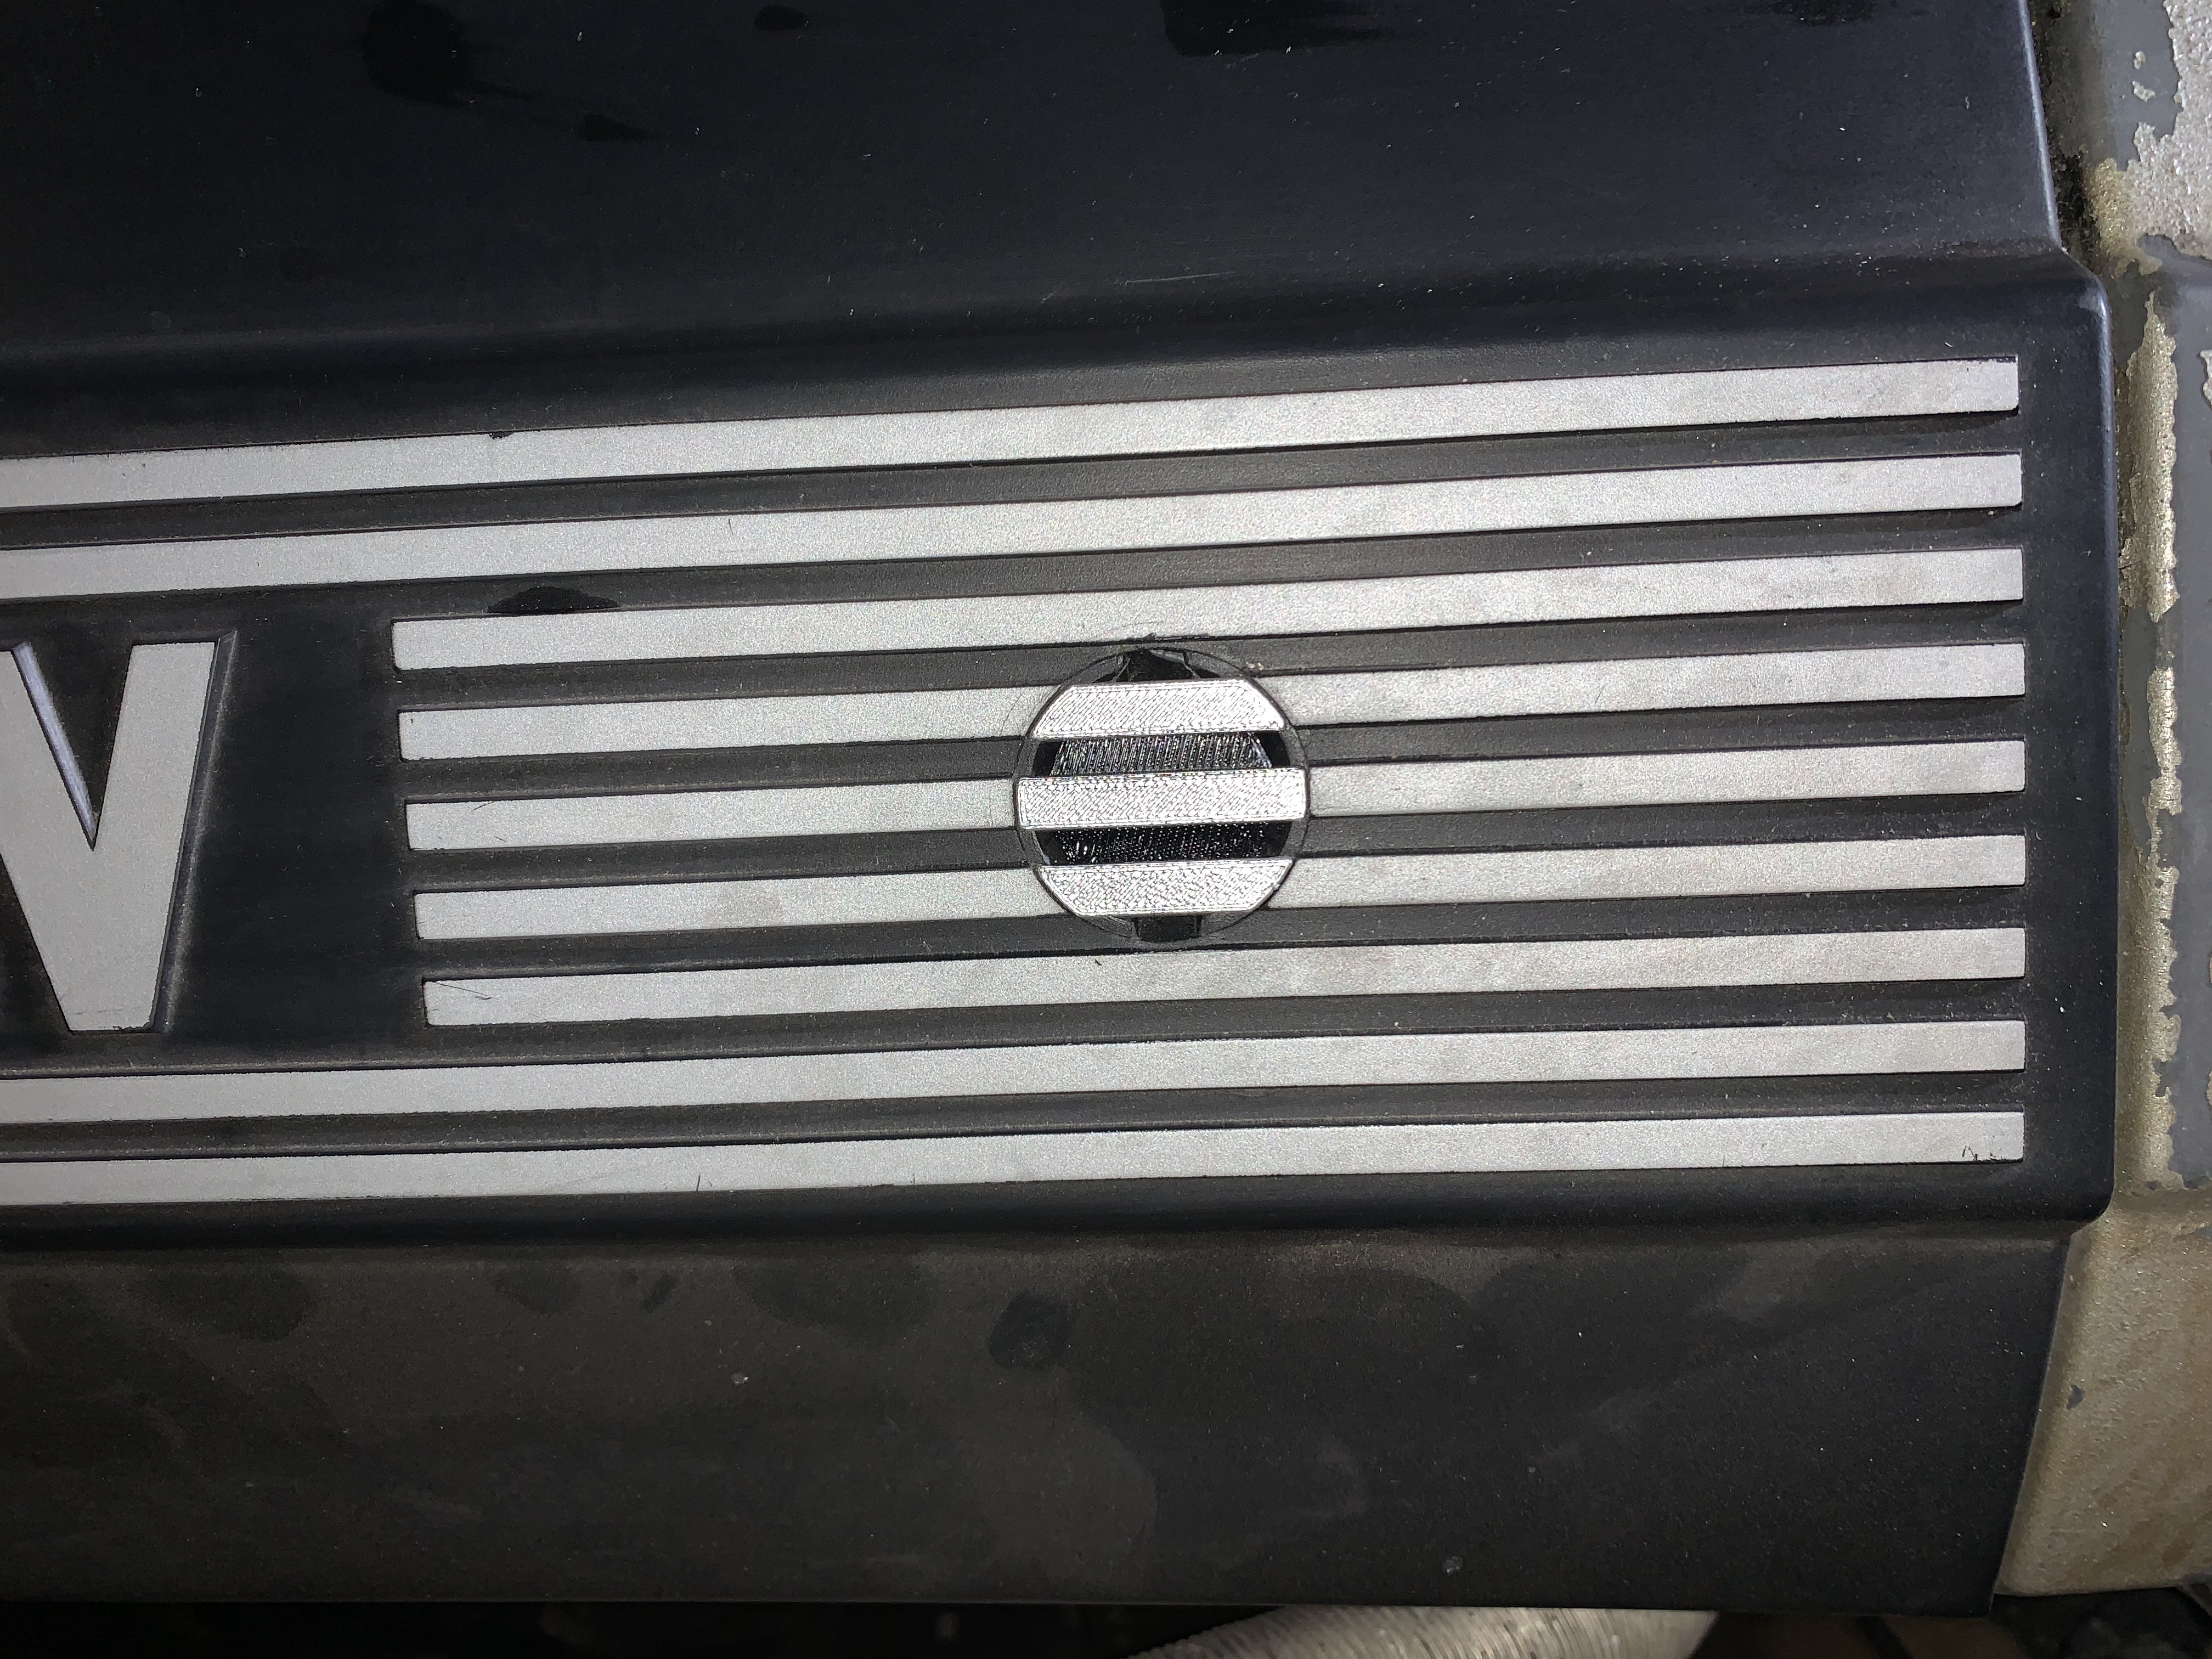 Engine cover bolt caps for E36 BMW